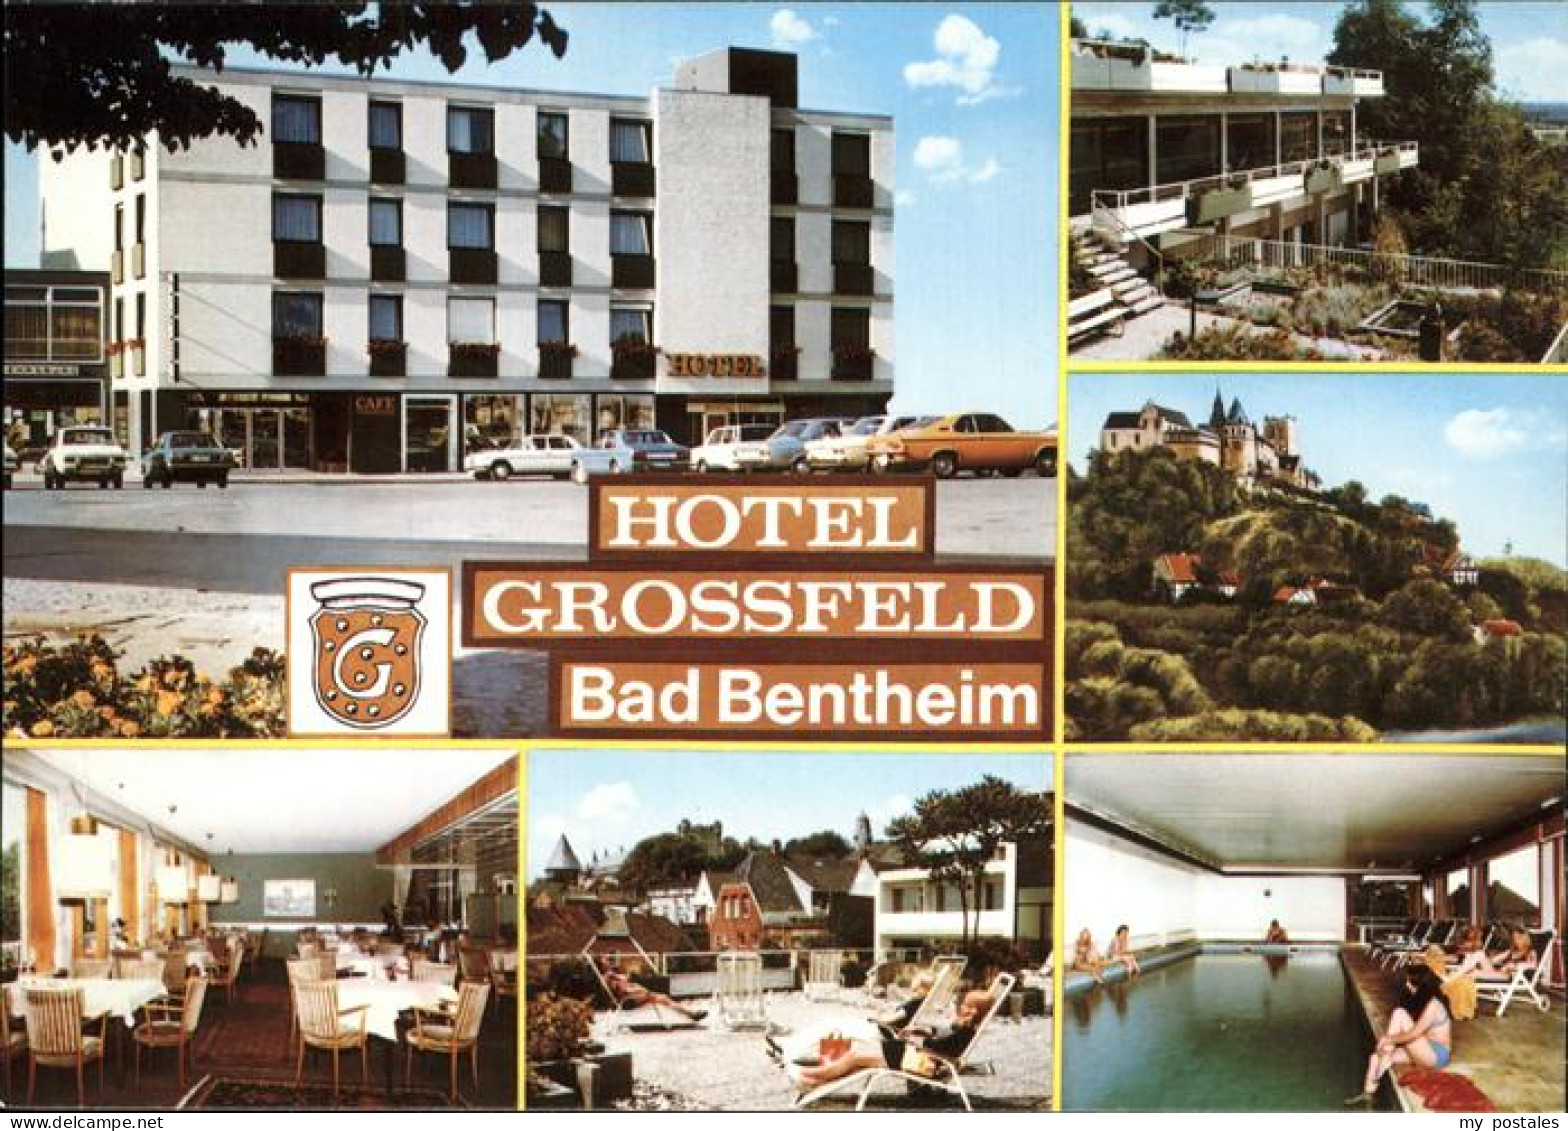 41287398 Bad Bentheim Hotel Grossfeld Bad Bentheim - Bad Bentheim